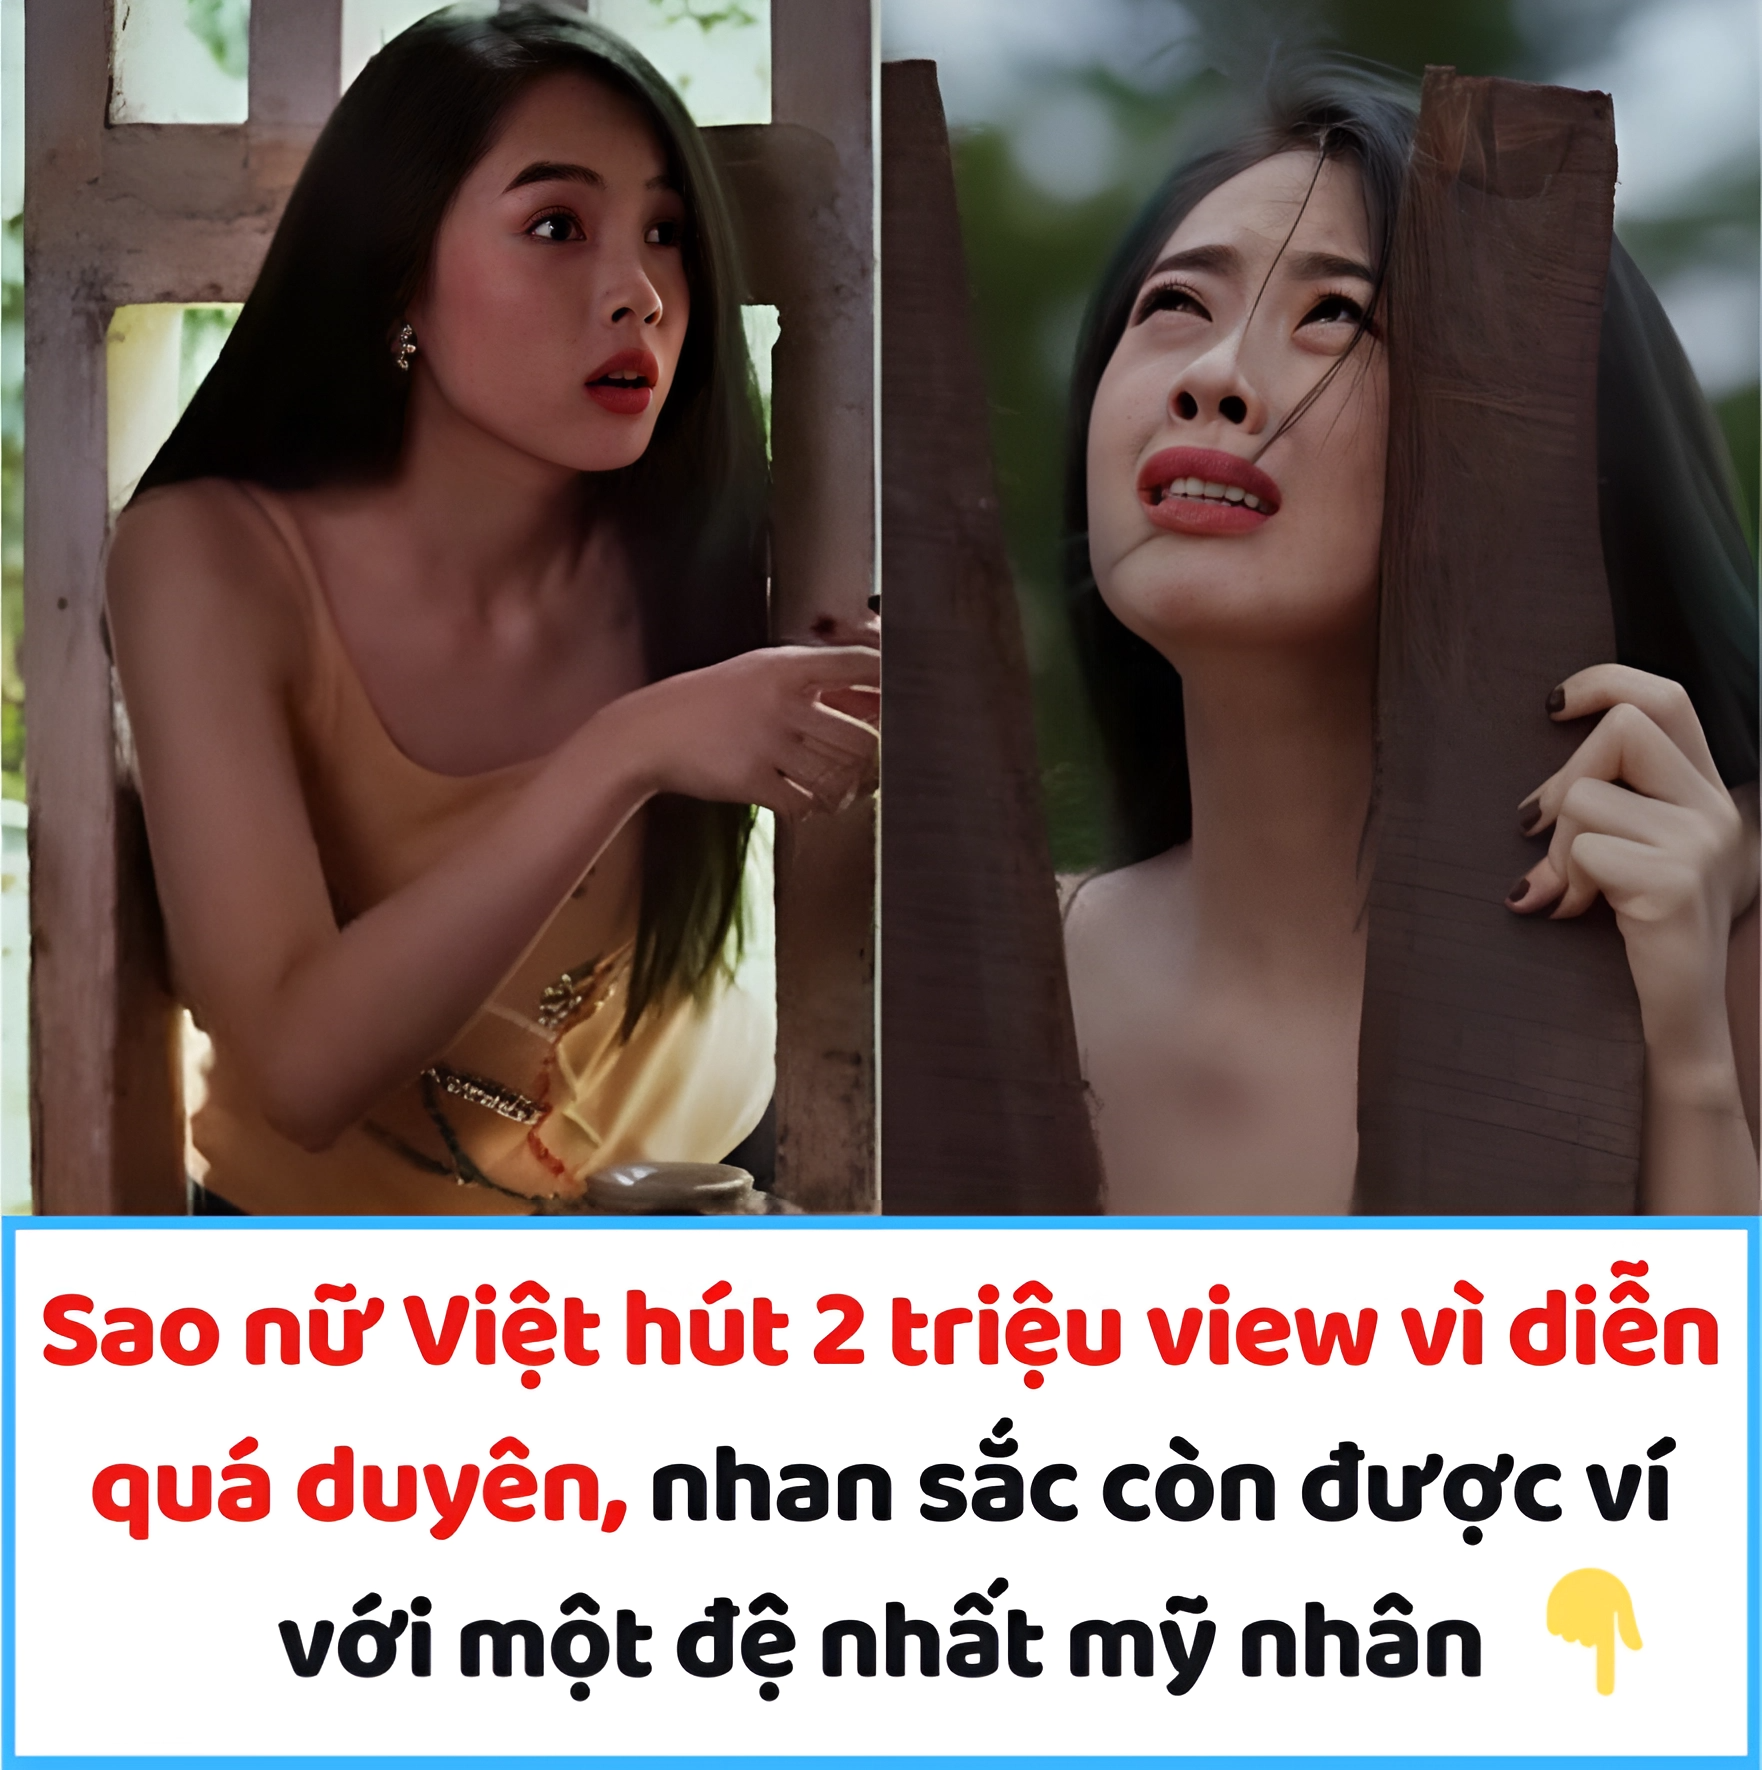 Sao nữ Việt hút 2 triệu view vì diễn quá duyên, nhan sắc còn được ví với một đệ nhất mỹ nhân